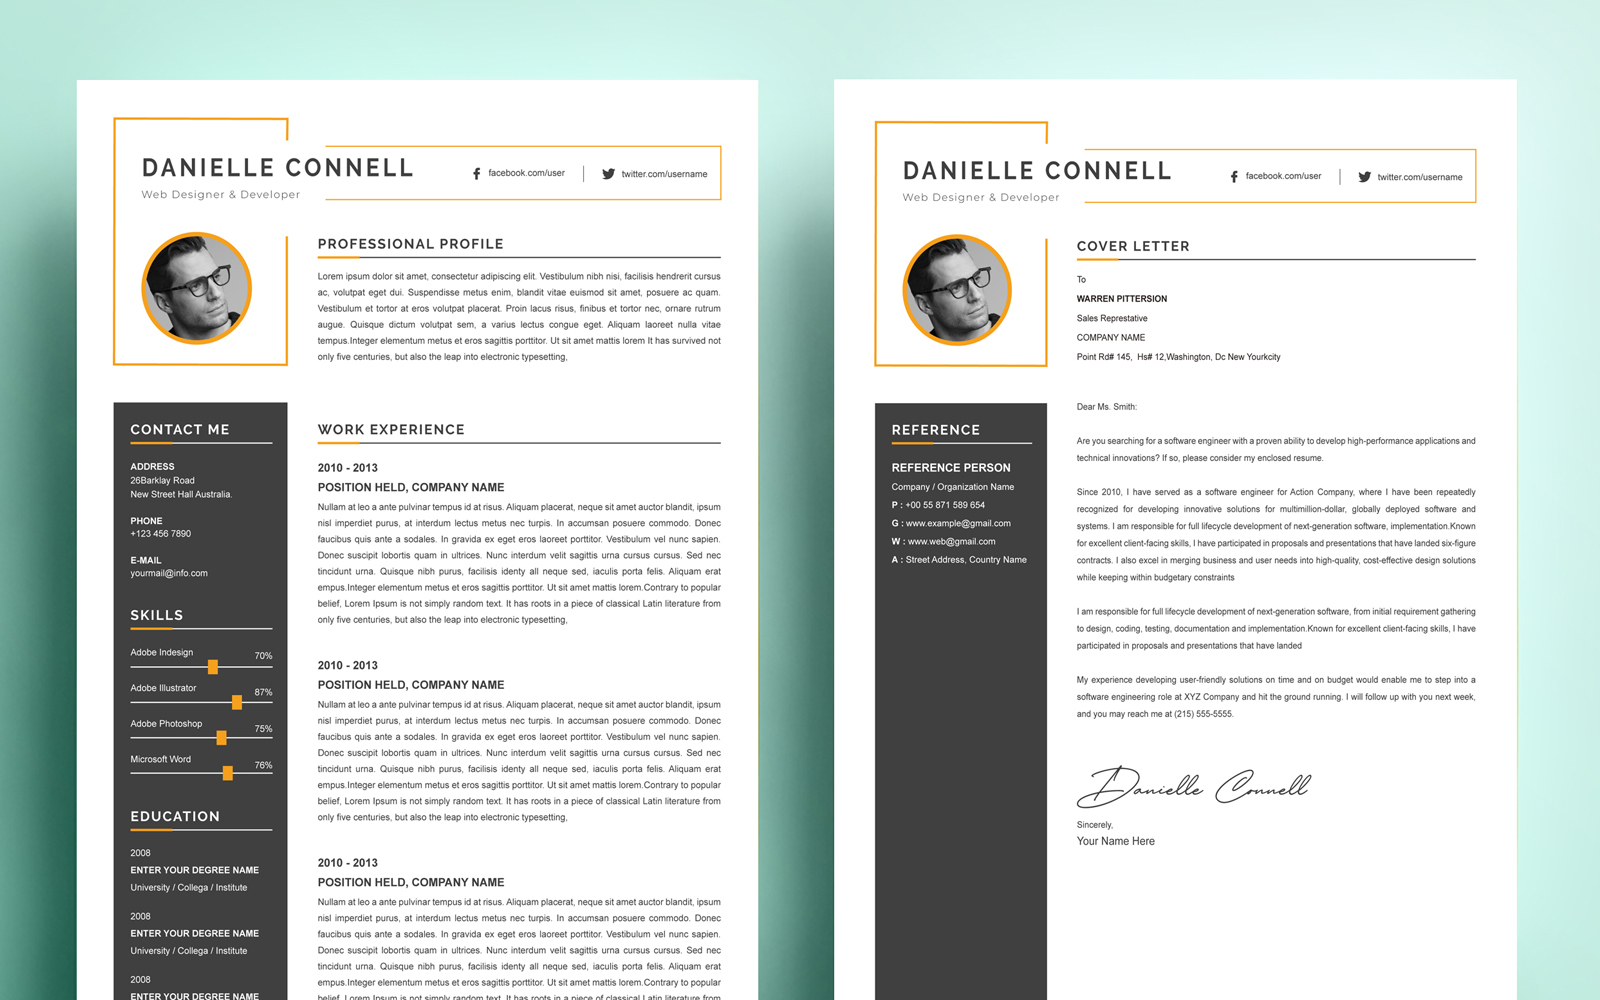 Denielle Connell - Resume Template CV Resume